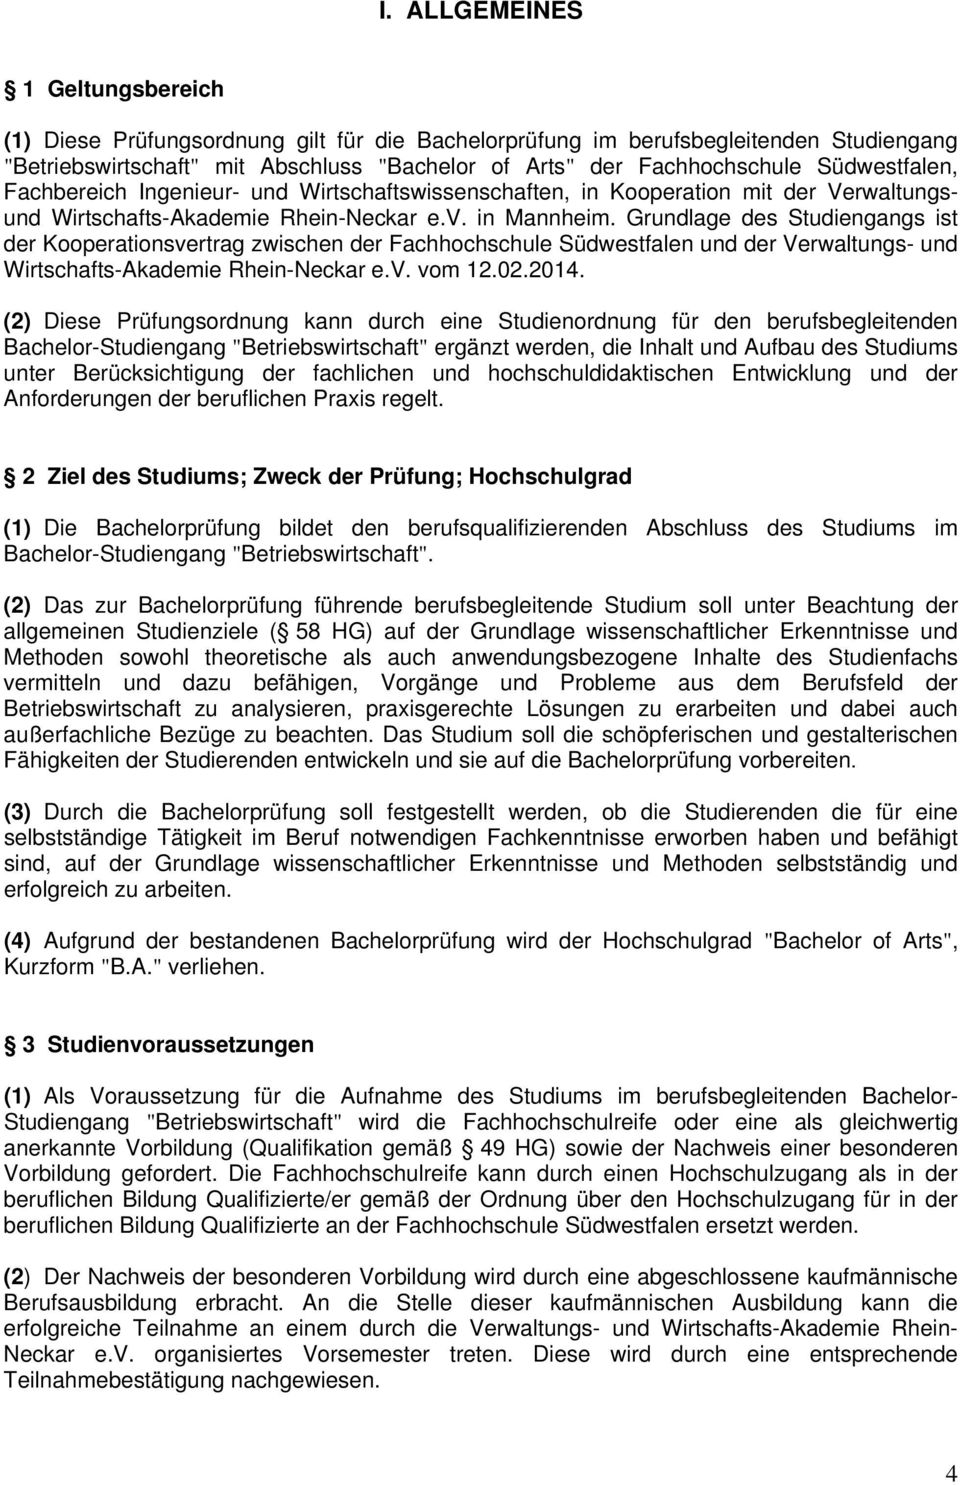 Grundlage des Studiengangs ist der Kooperationsvertrag zwischen der Fachhochschule Südwestfalen und der Verwaltungs- und Wirtschafts-Akademie Rhein-Neckar e.v. vom 12.02.2014.